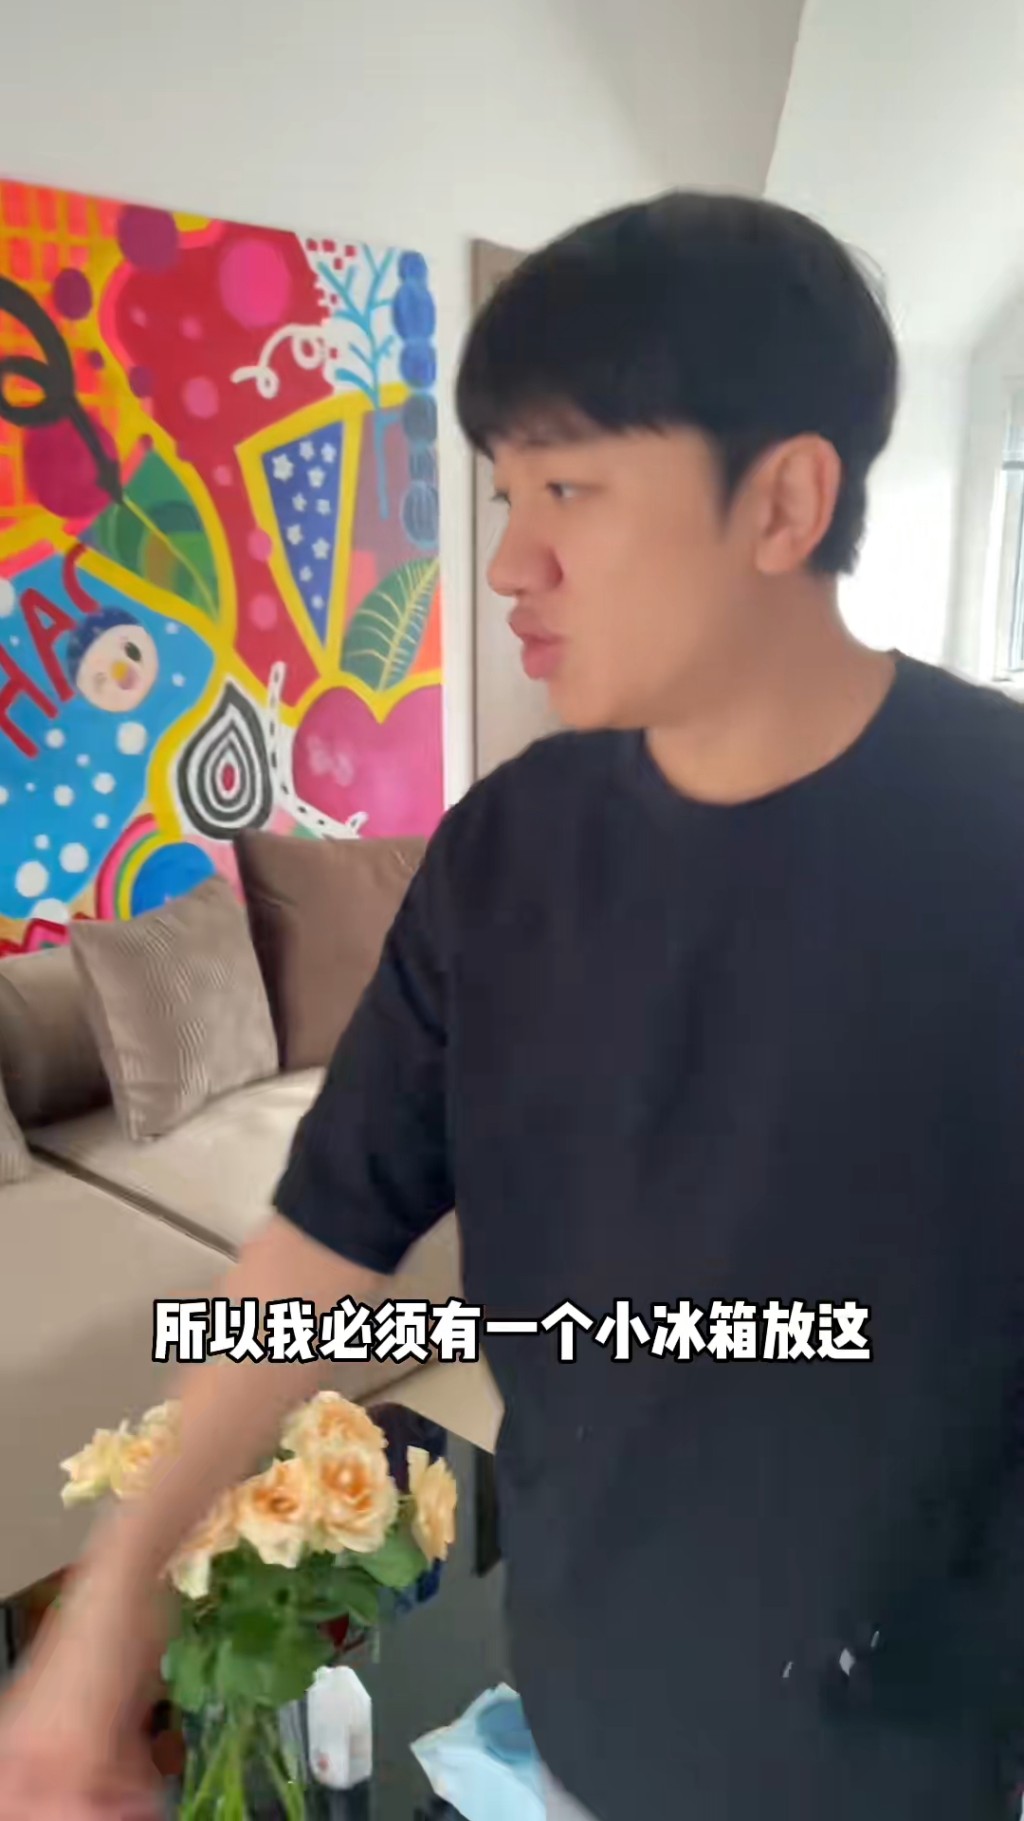 網民除了笑王祖藍抬小雪櫃扮勁，亦讚他是好爸爸、好丈夫。